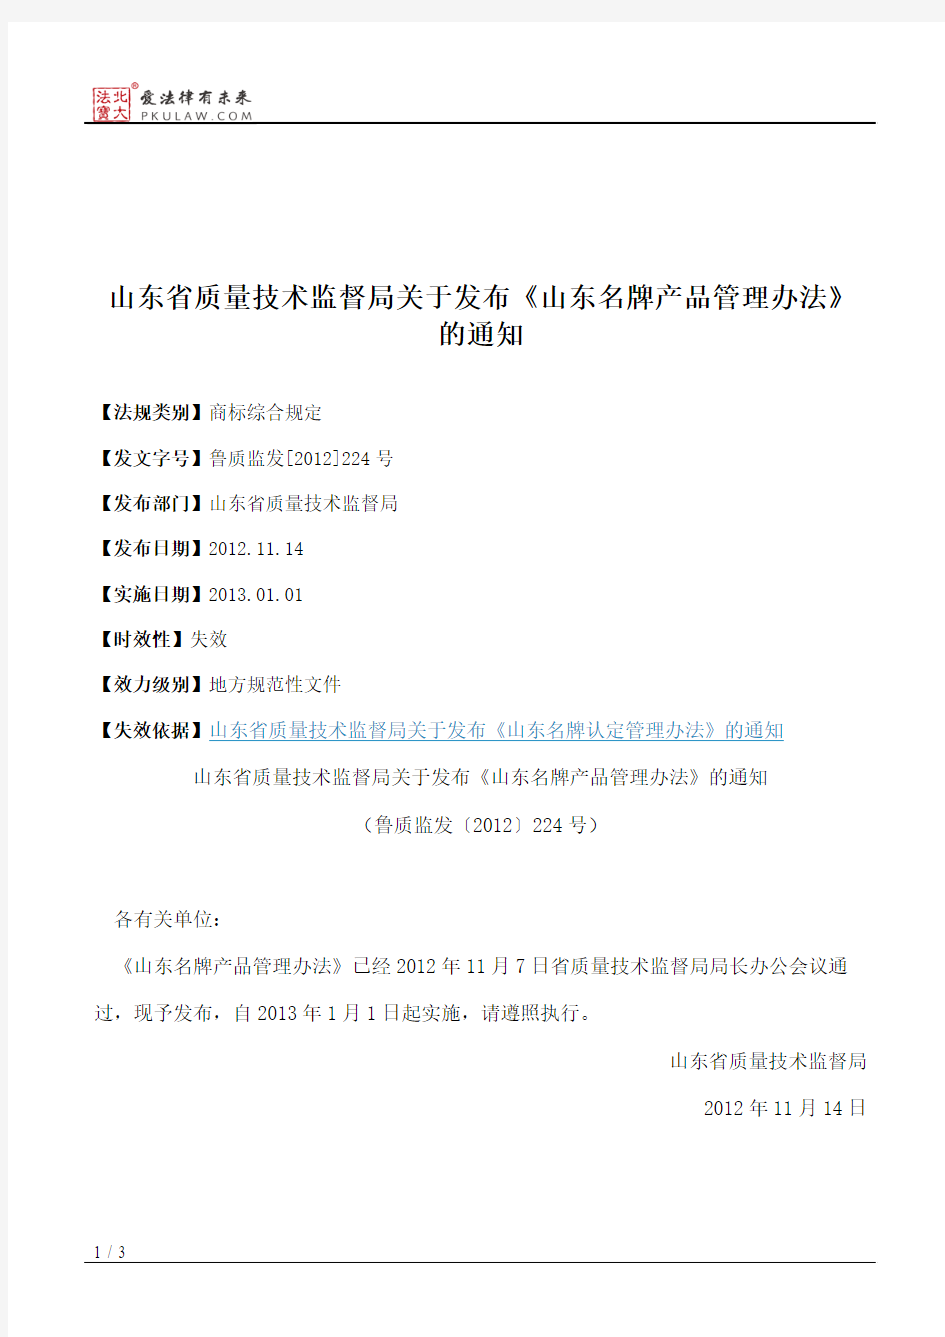 山东省质量技术监督局关于发布《山东名牌产品管理办法》的通知